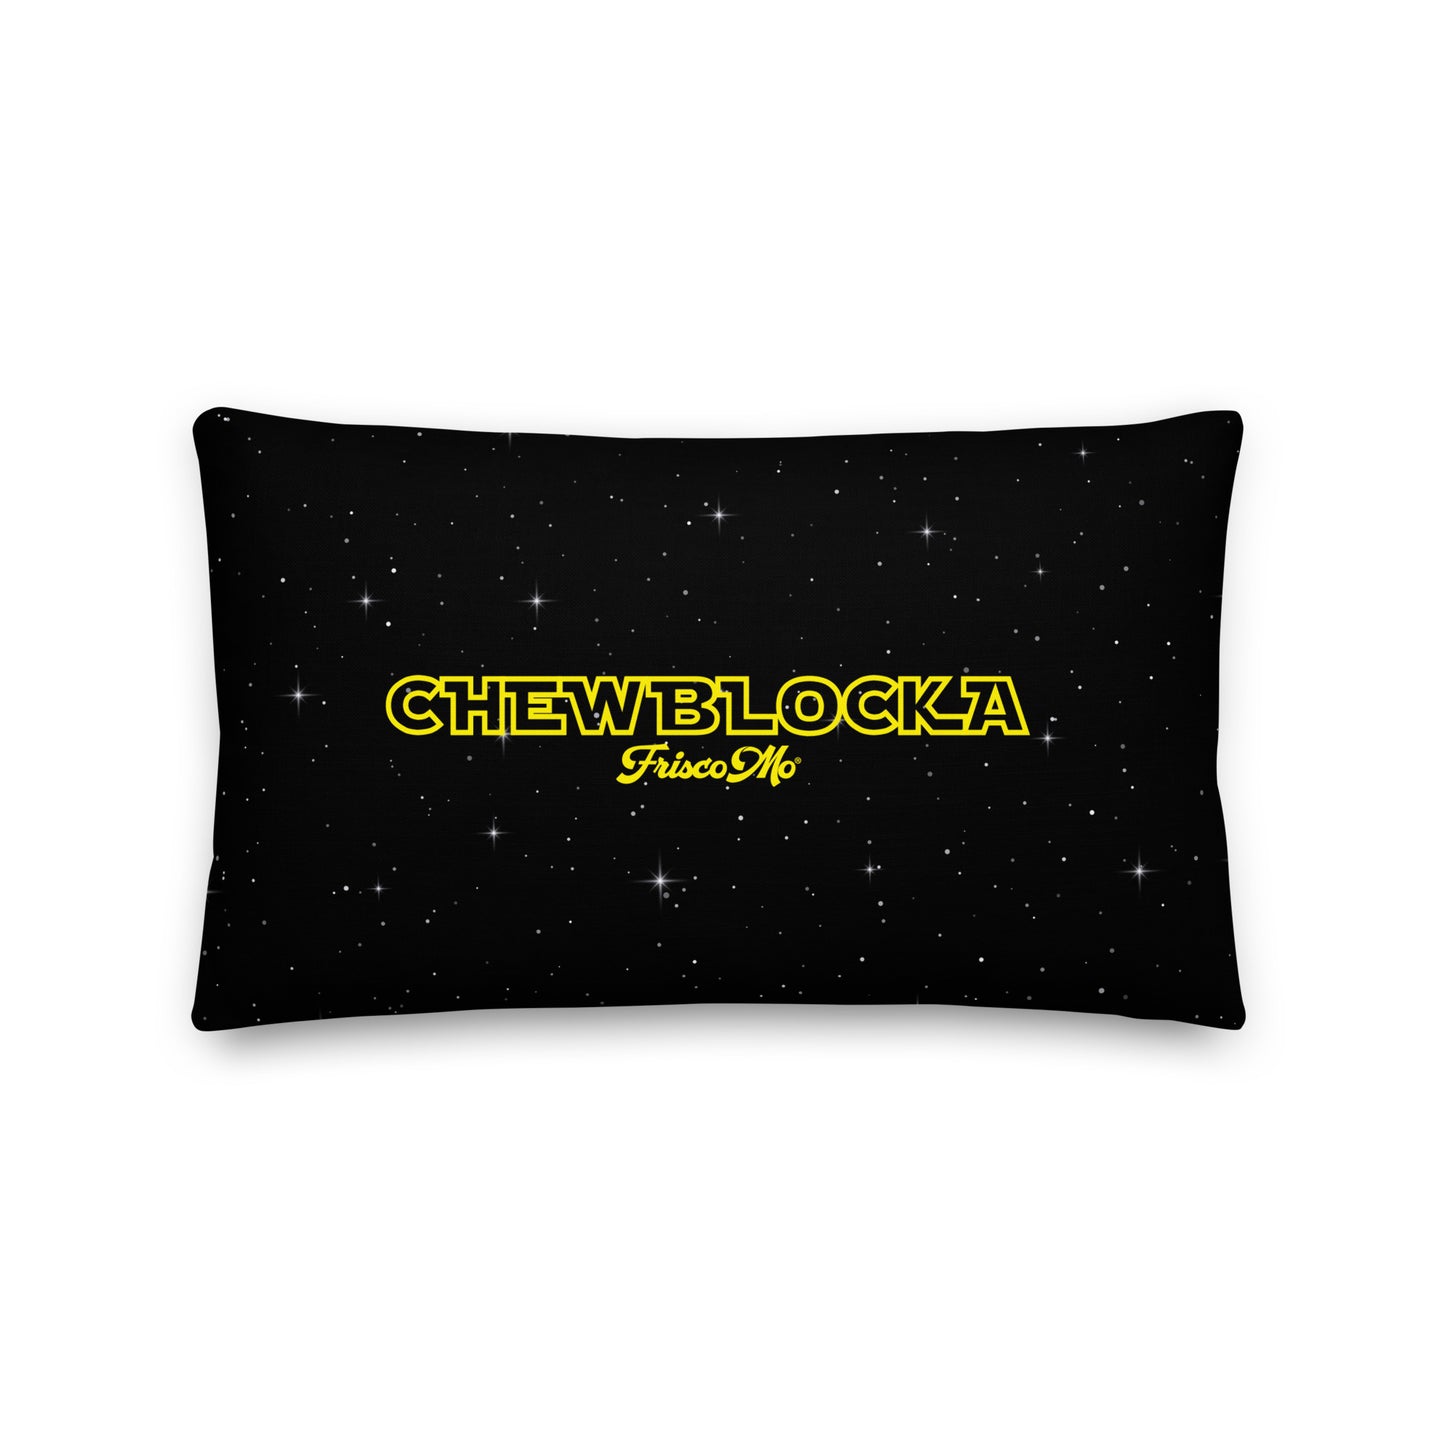 Chewblocka Pillow